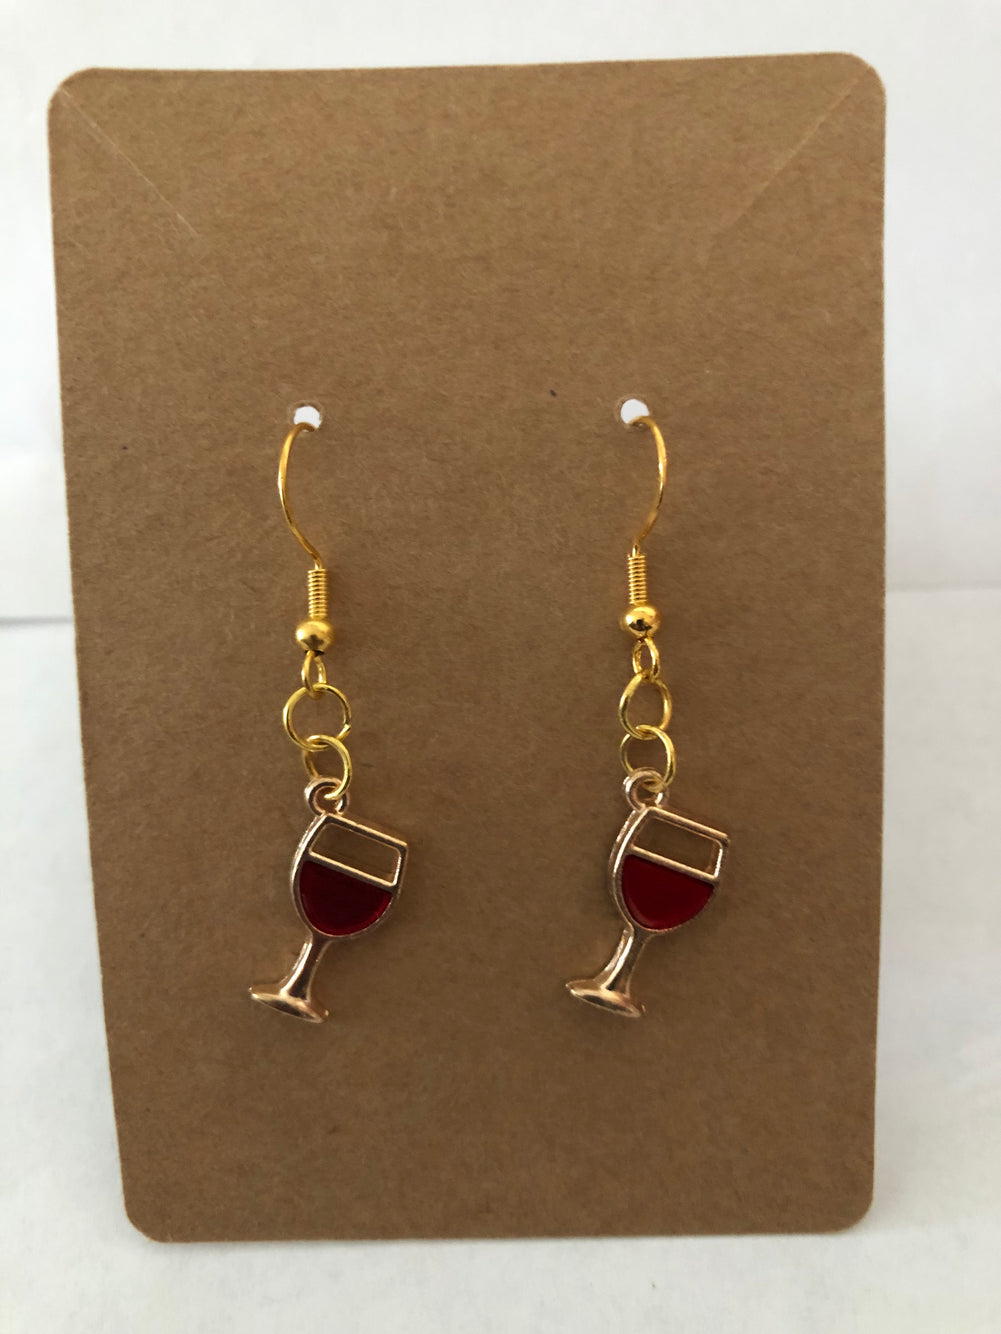 Glass of wine earrings